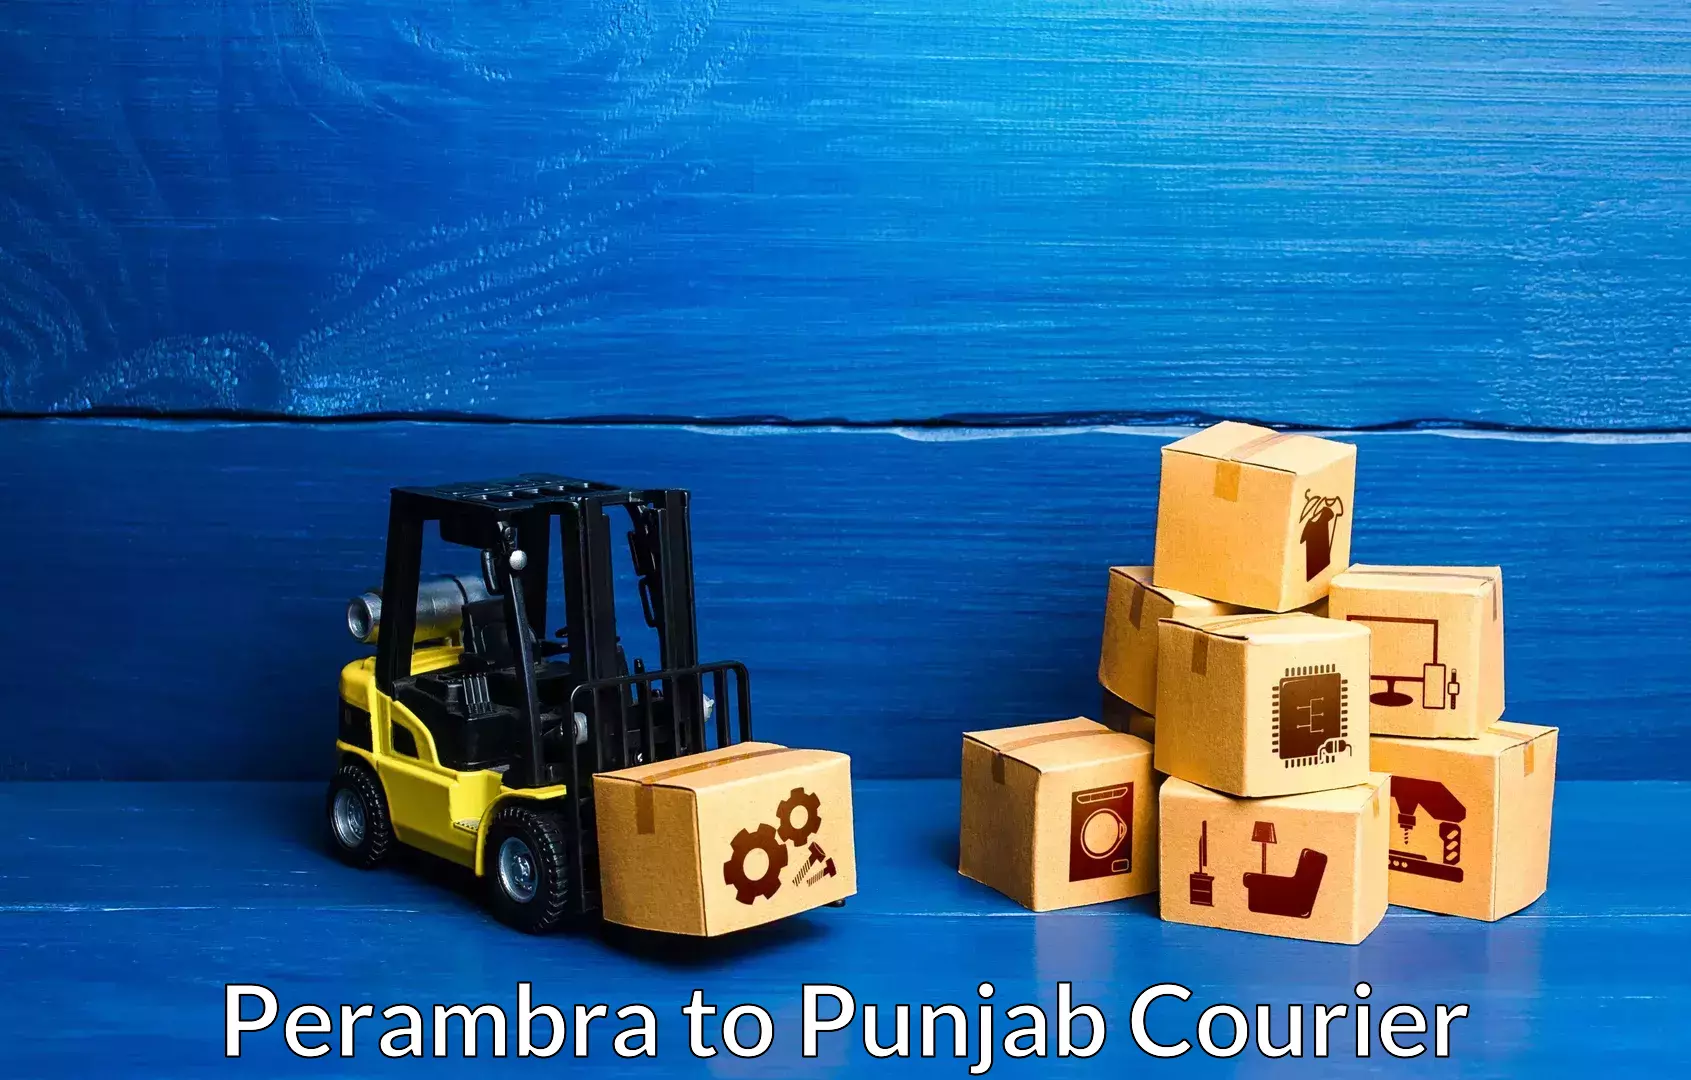 Full-service furniture transport Perambra to Punjab